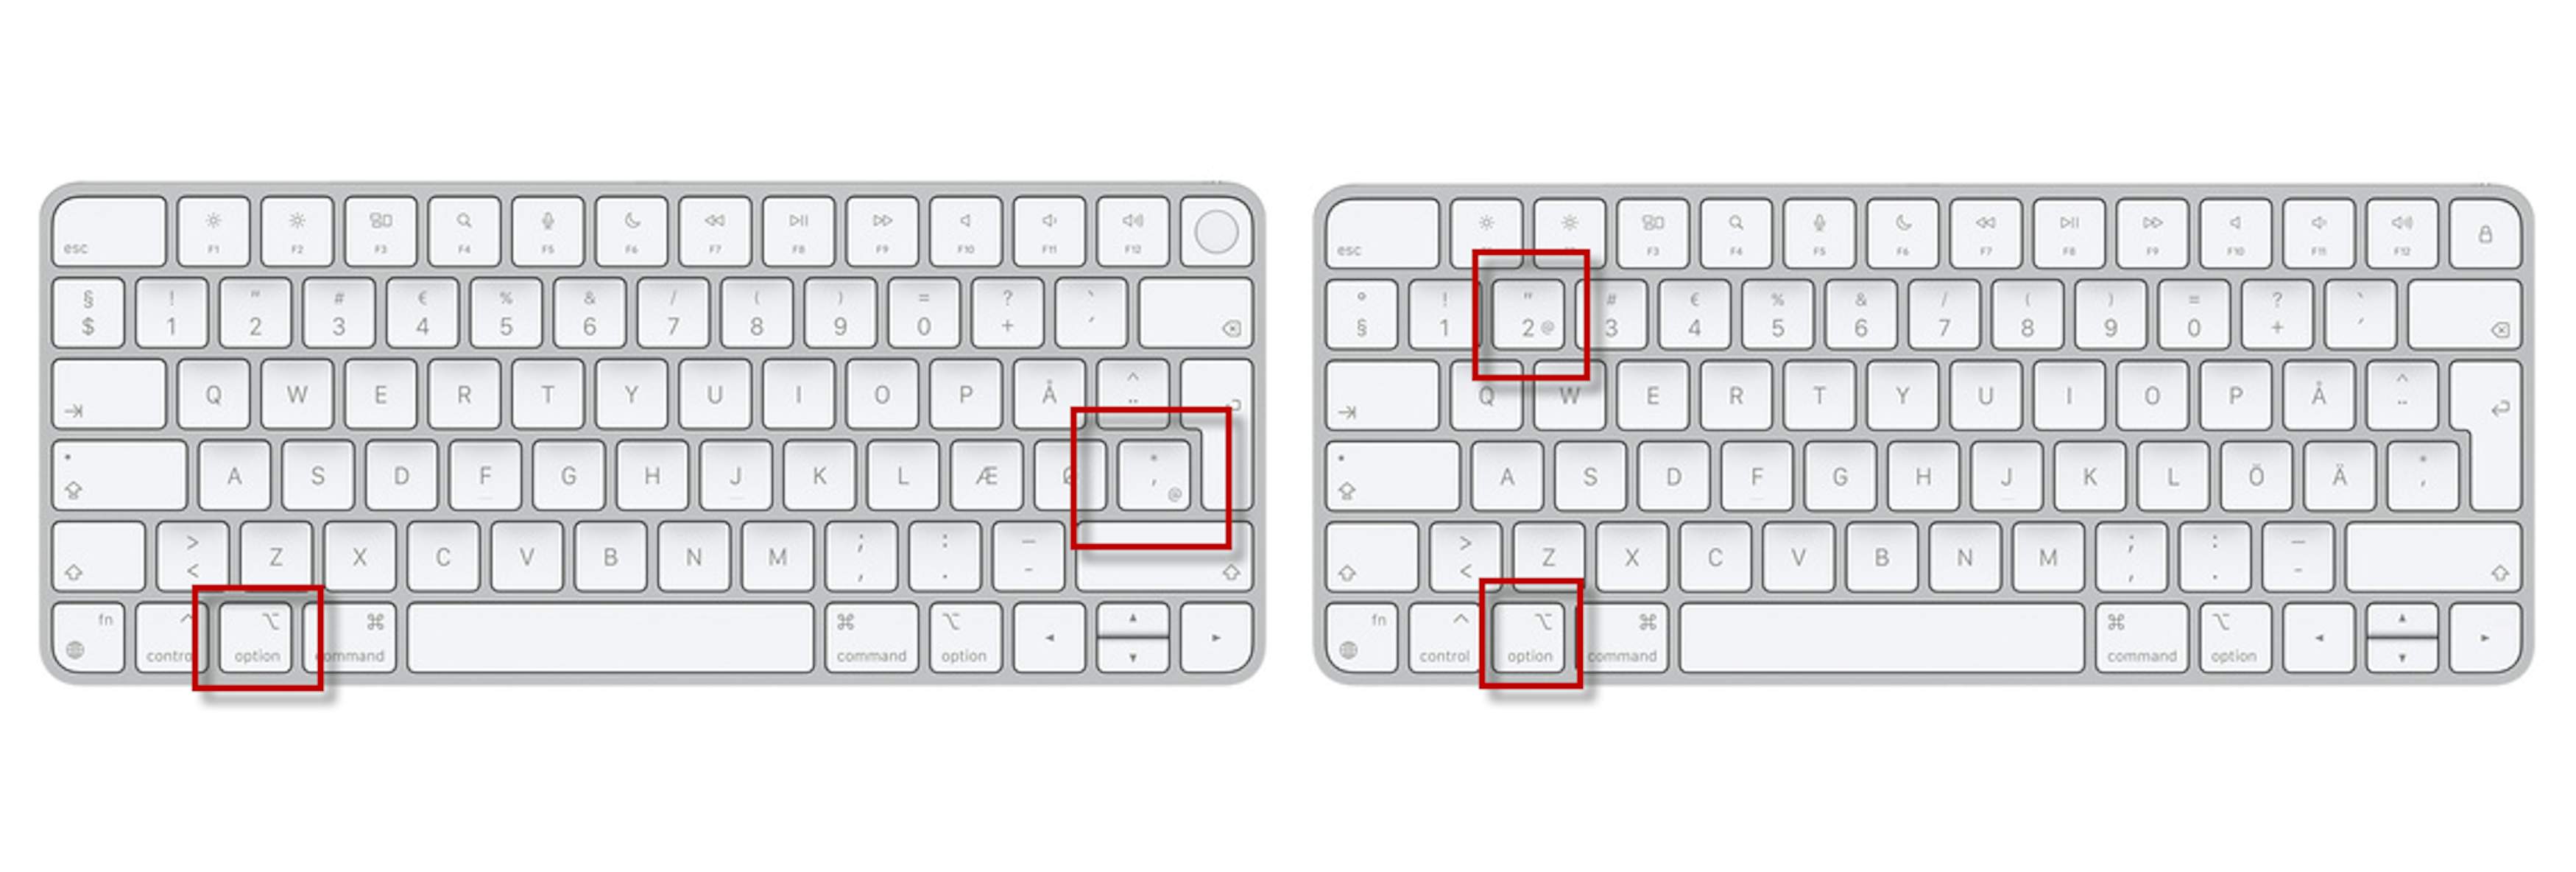 Snabel-a - et af de stærkeste tegn på tastatur | Komputer.dk